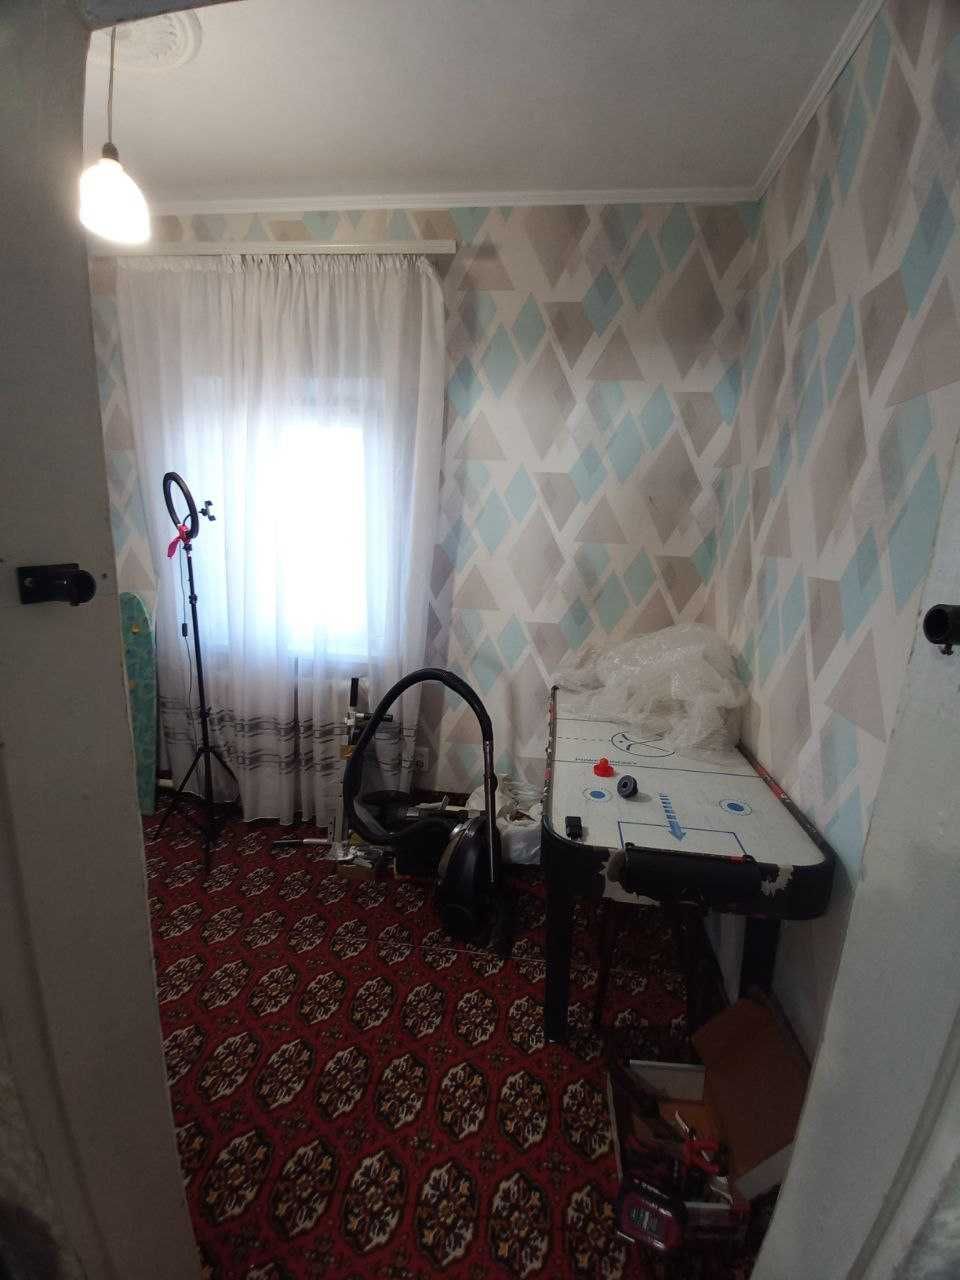 Продам 3 комнатный дом в Диевке-1. Новокодакский район. Спокойная ул.